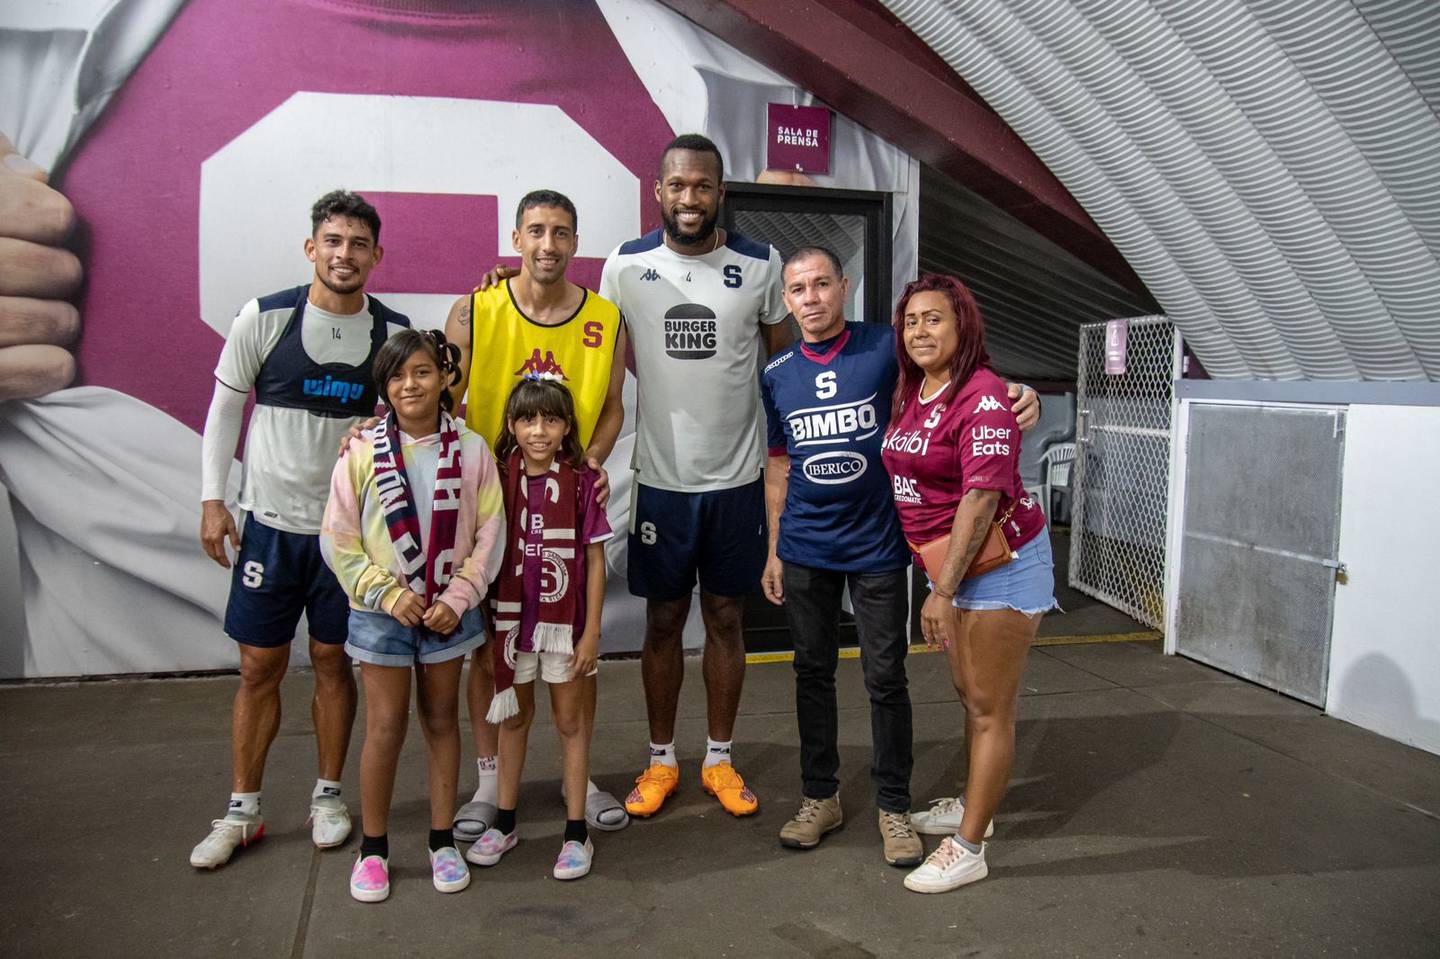 Alondra Quirós es una niña de 9 años que cumplió un sueño: ir al estadio y conocer a los jugadores del Saprissa. Prensa Saprissa.